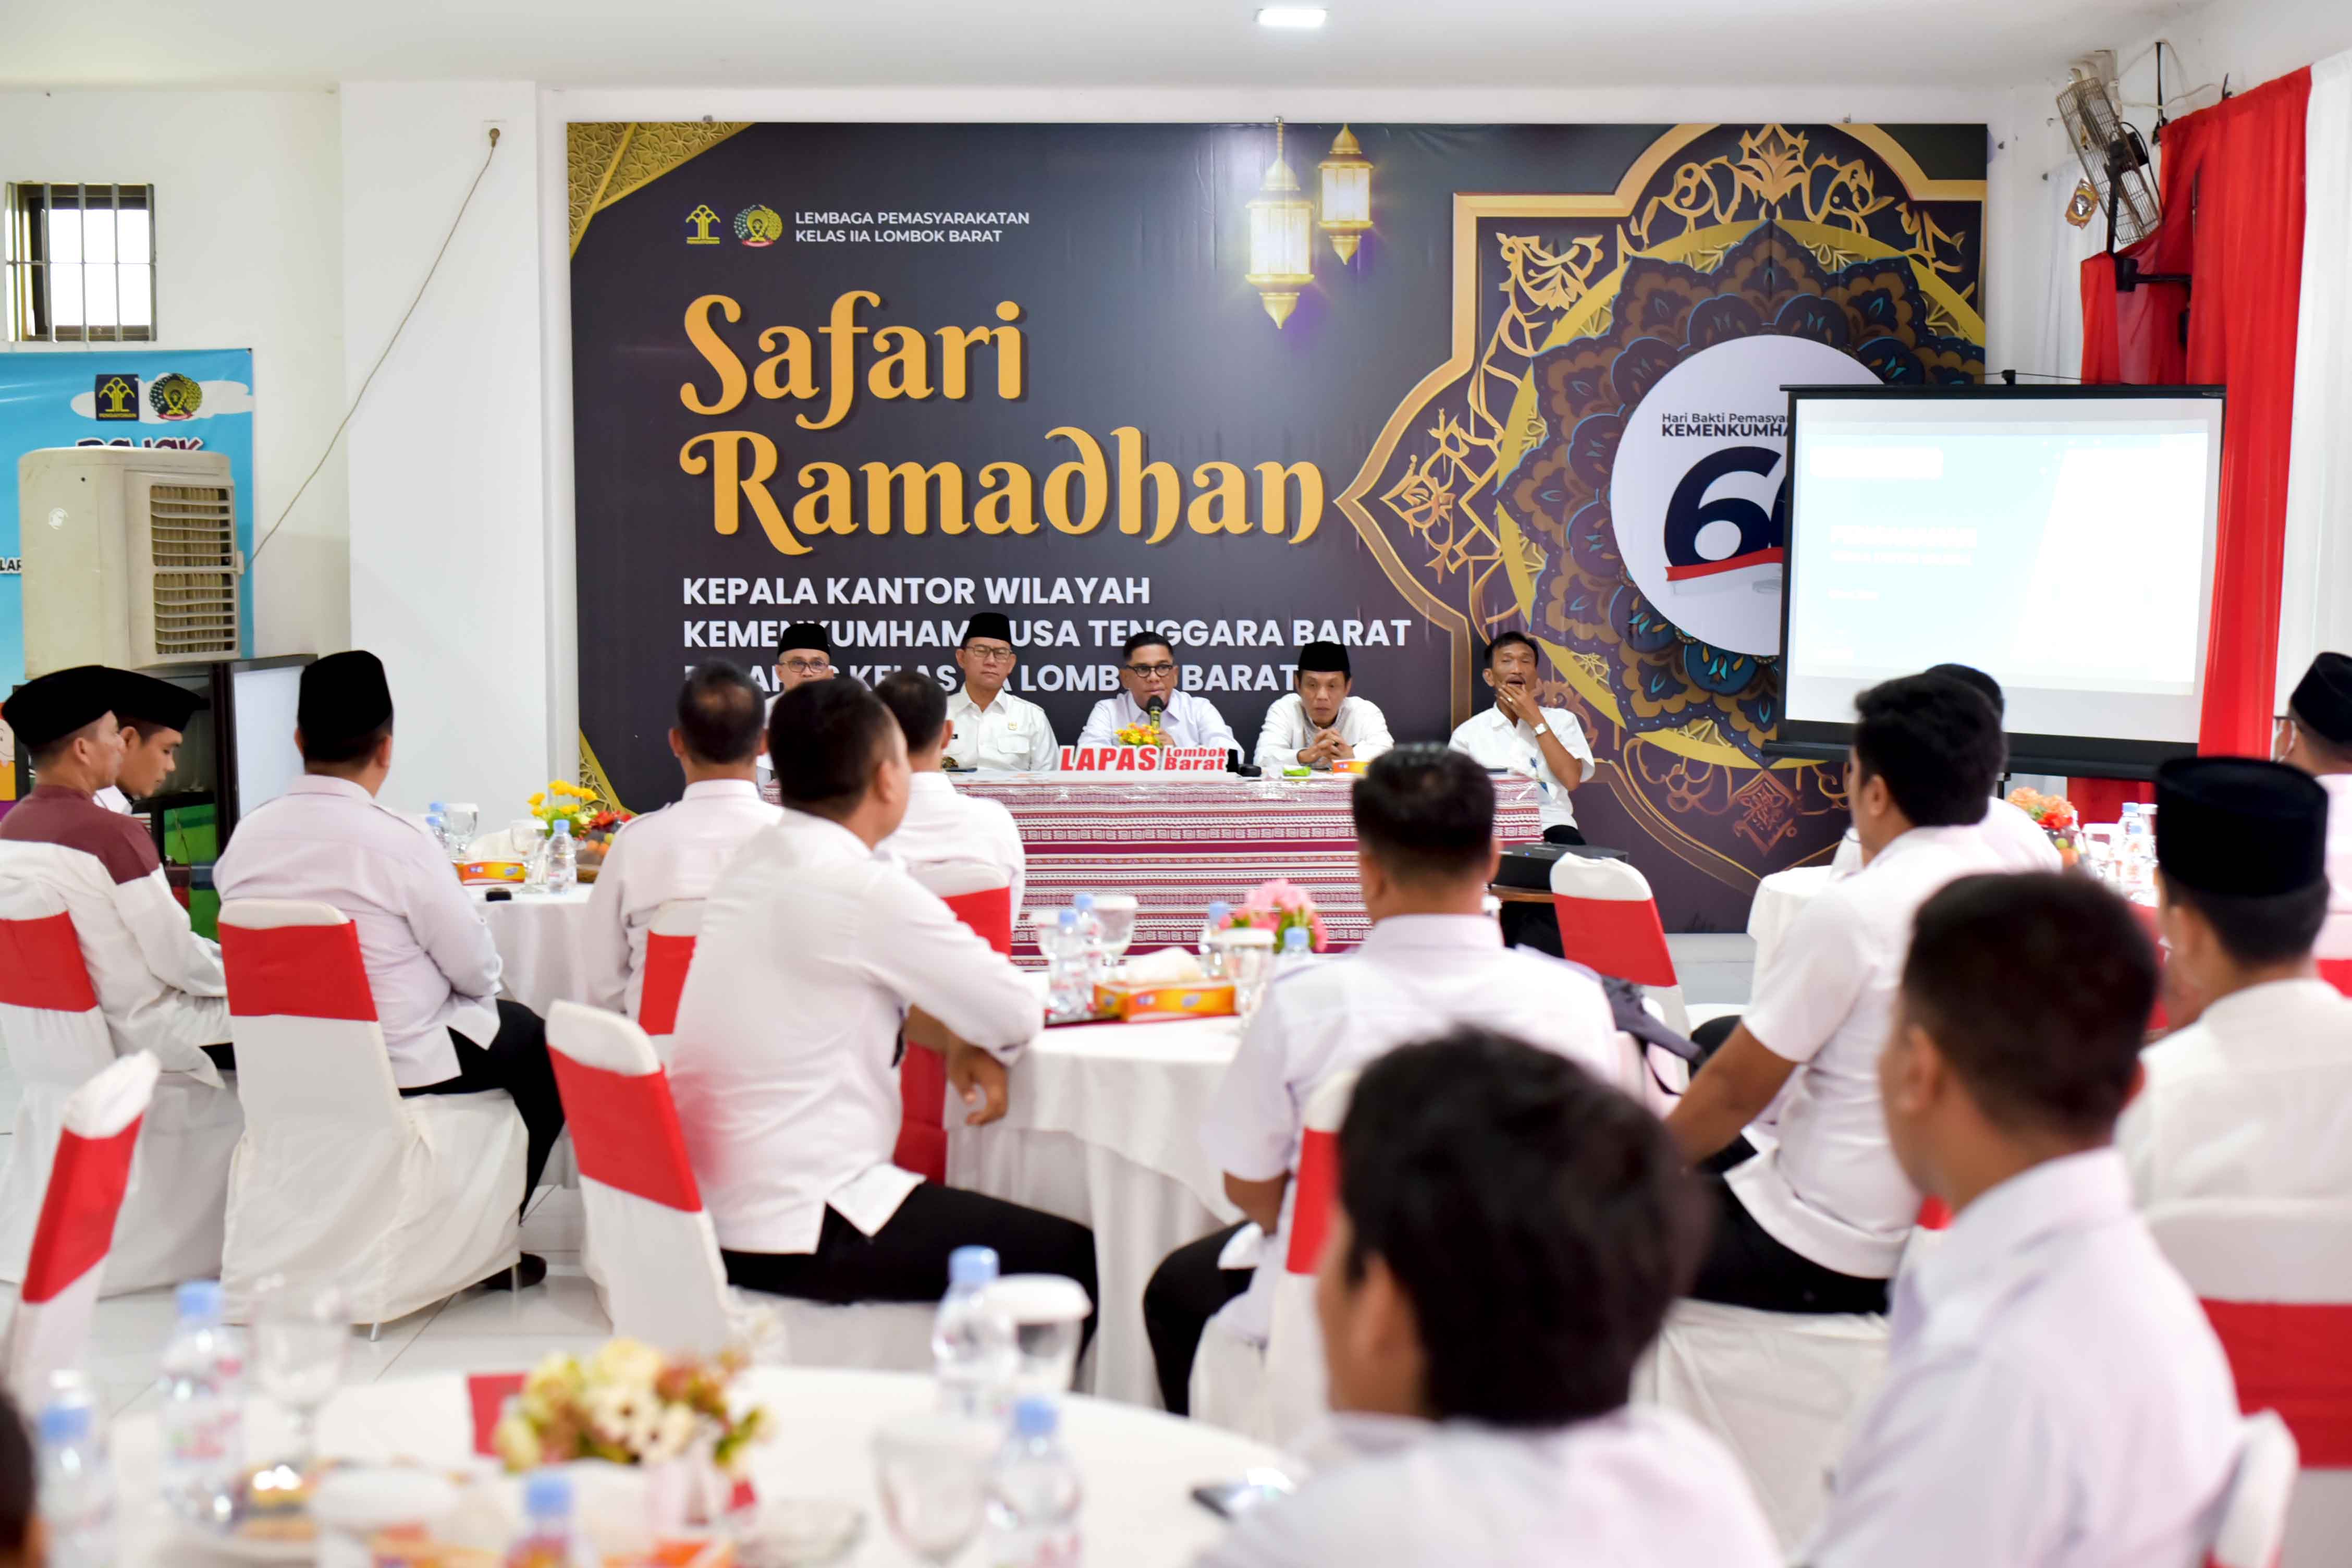 Lapas Terbuka Lombok Tengah Ikuti Safari Ramadhan dalam Rangka Hari Bhakti Pemasyarakatan Ke-60 di Lapas Lombok Barat